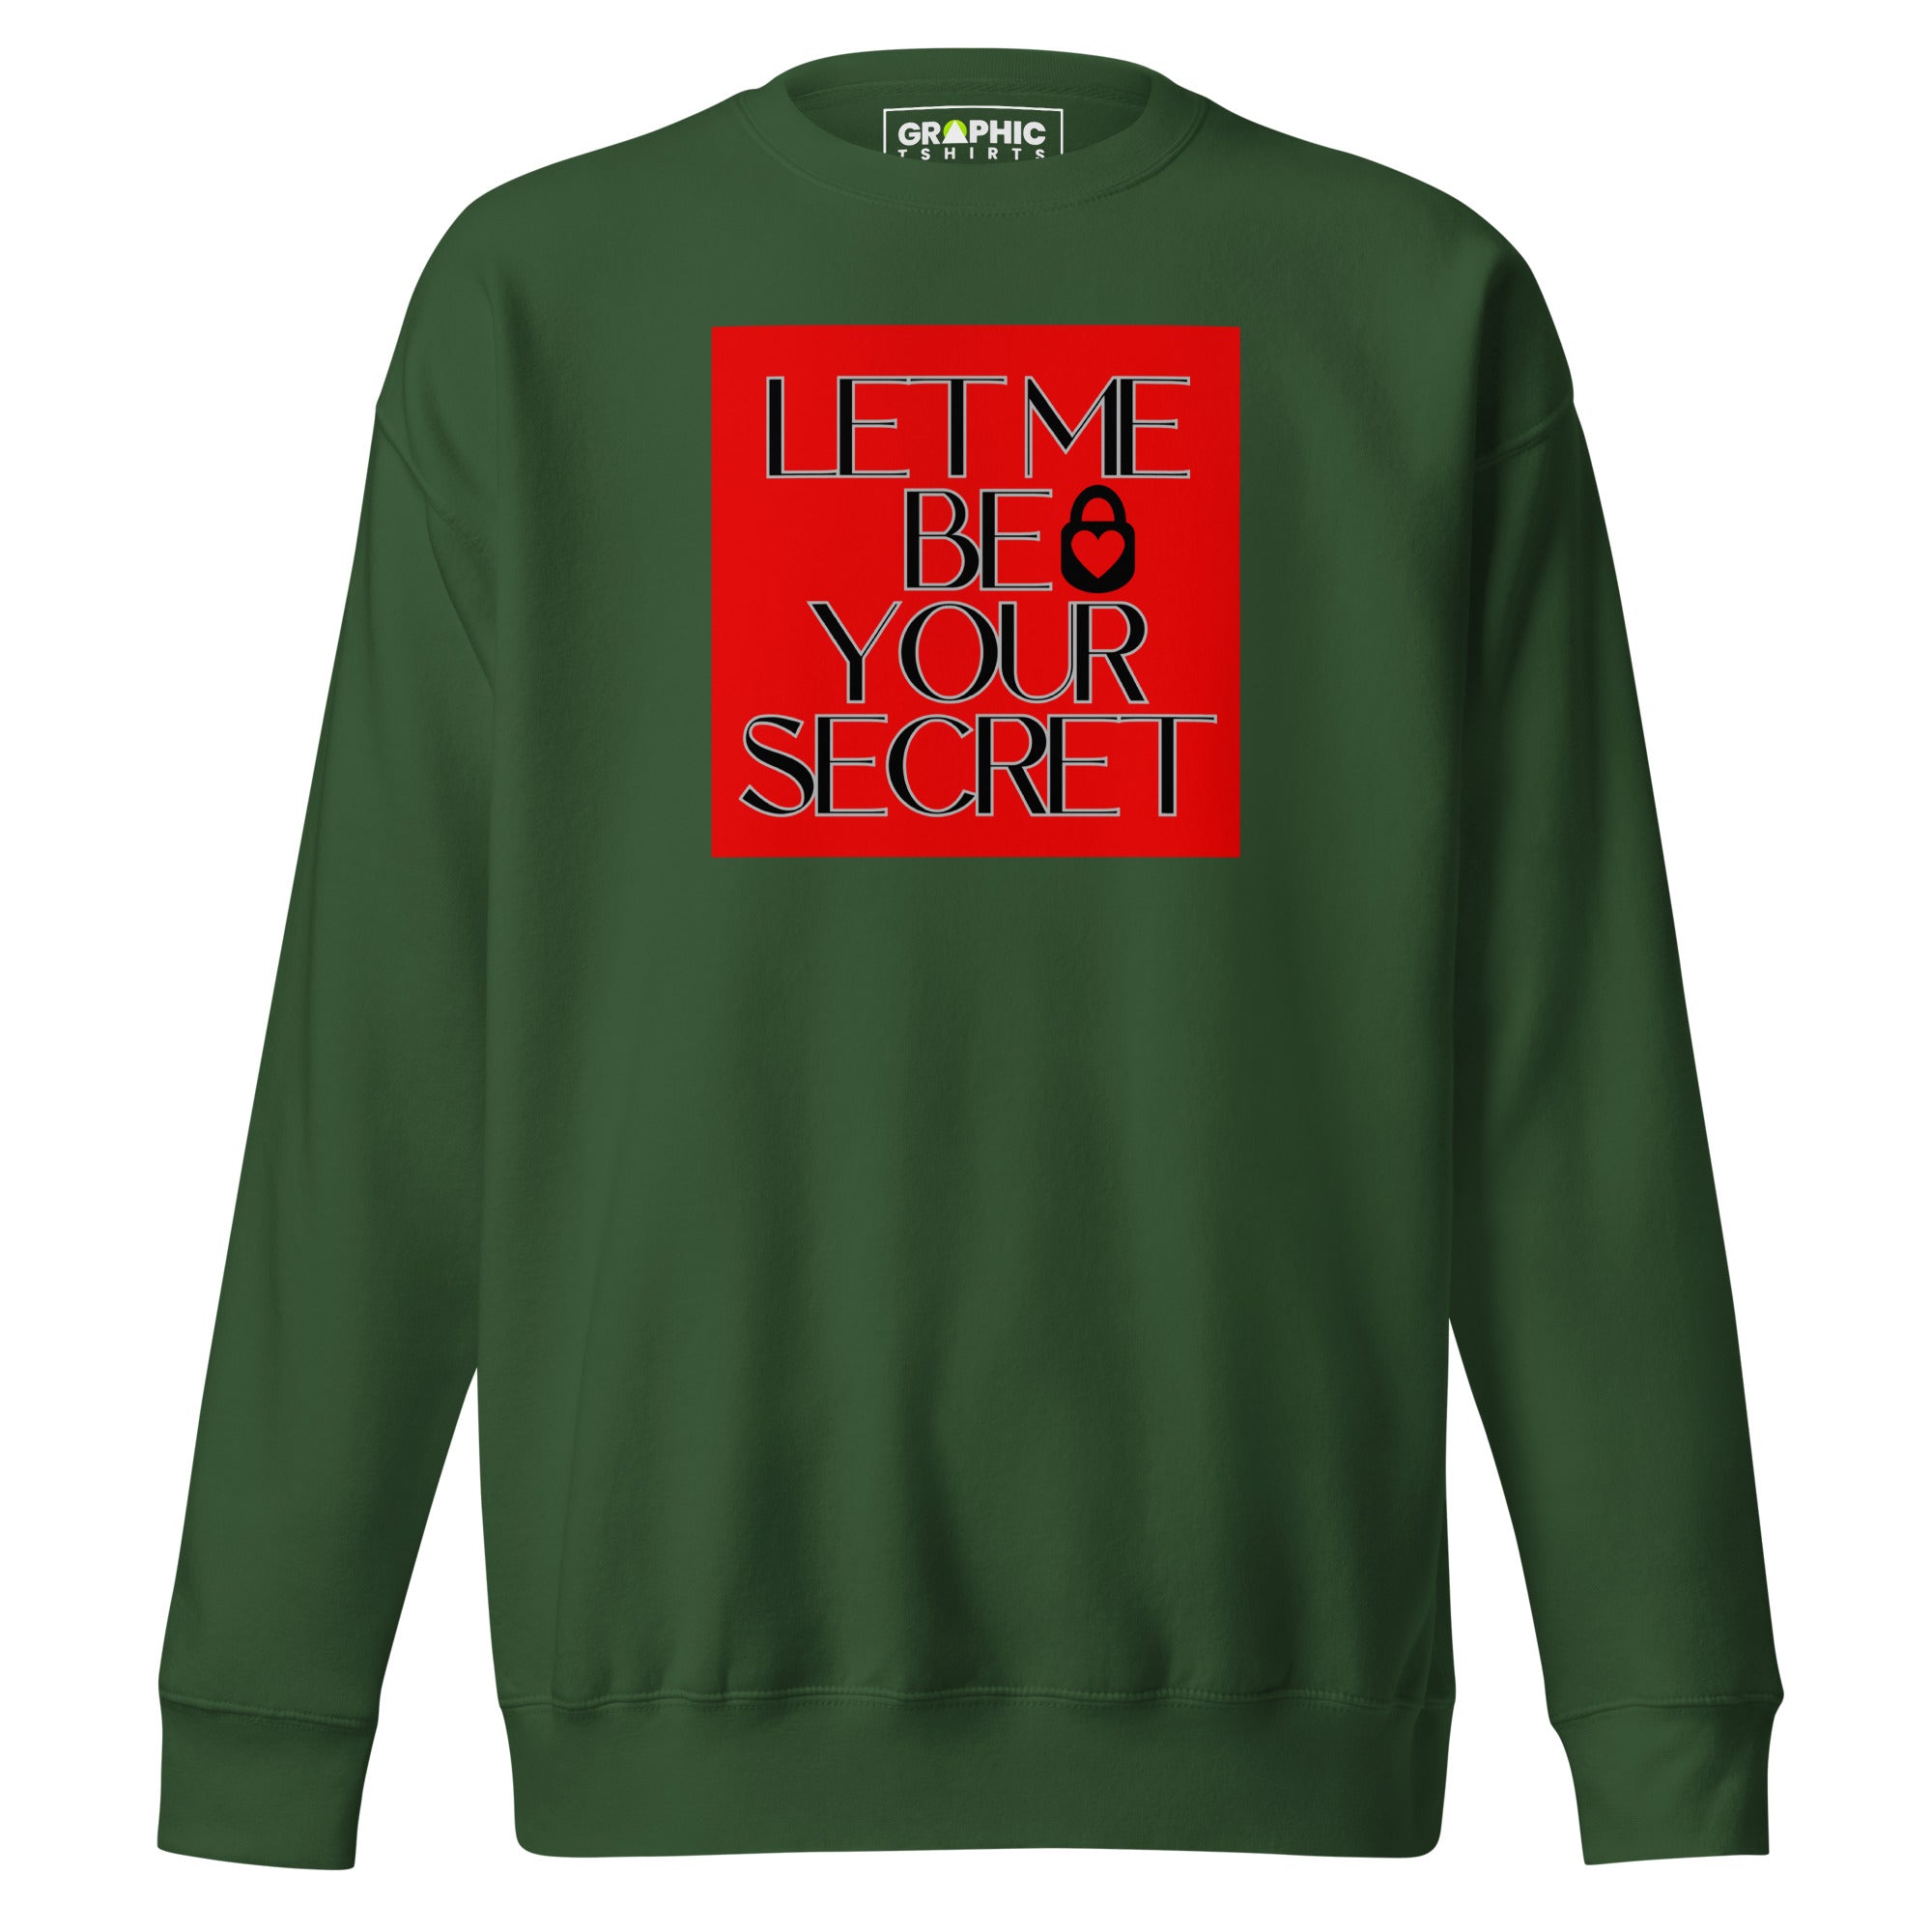 Unisex Premium Sweatshirt - Let Me Be Your Secret - GRAPHIC T-SHIRTS